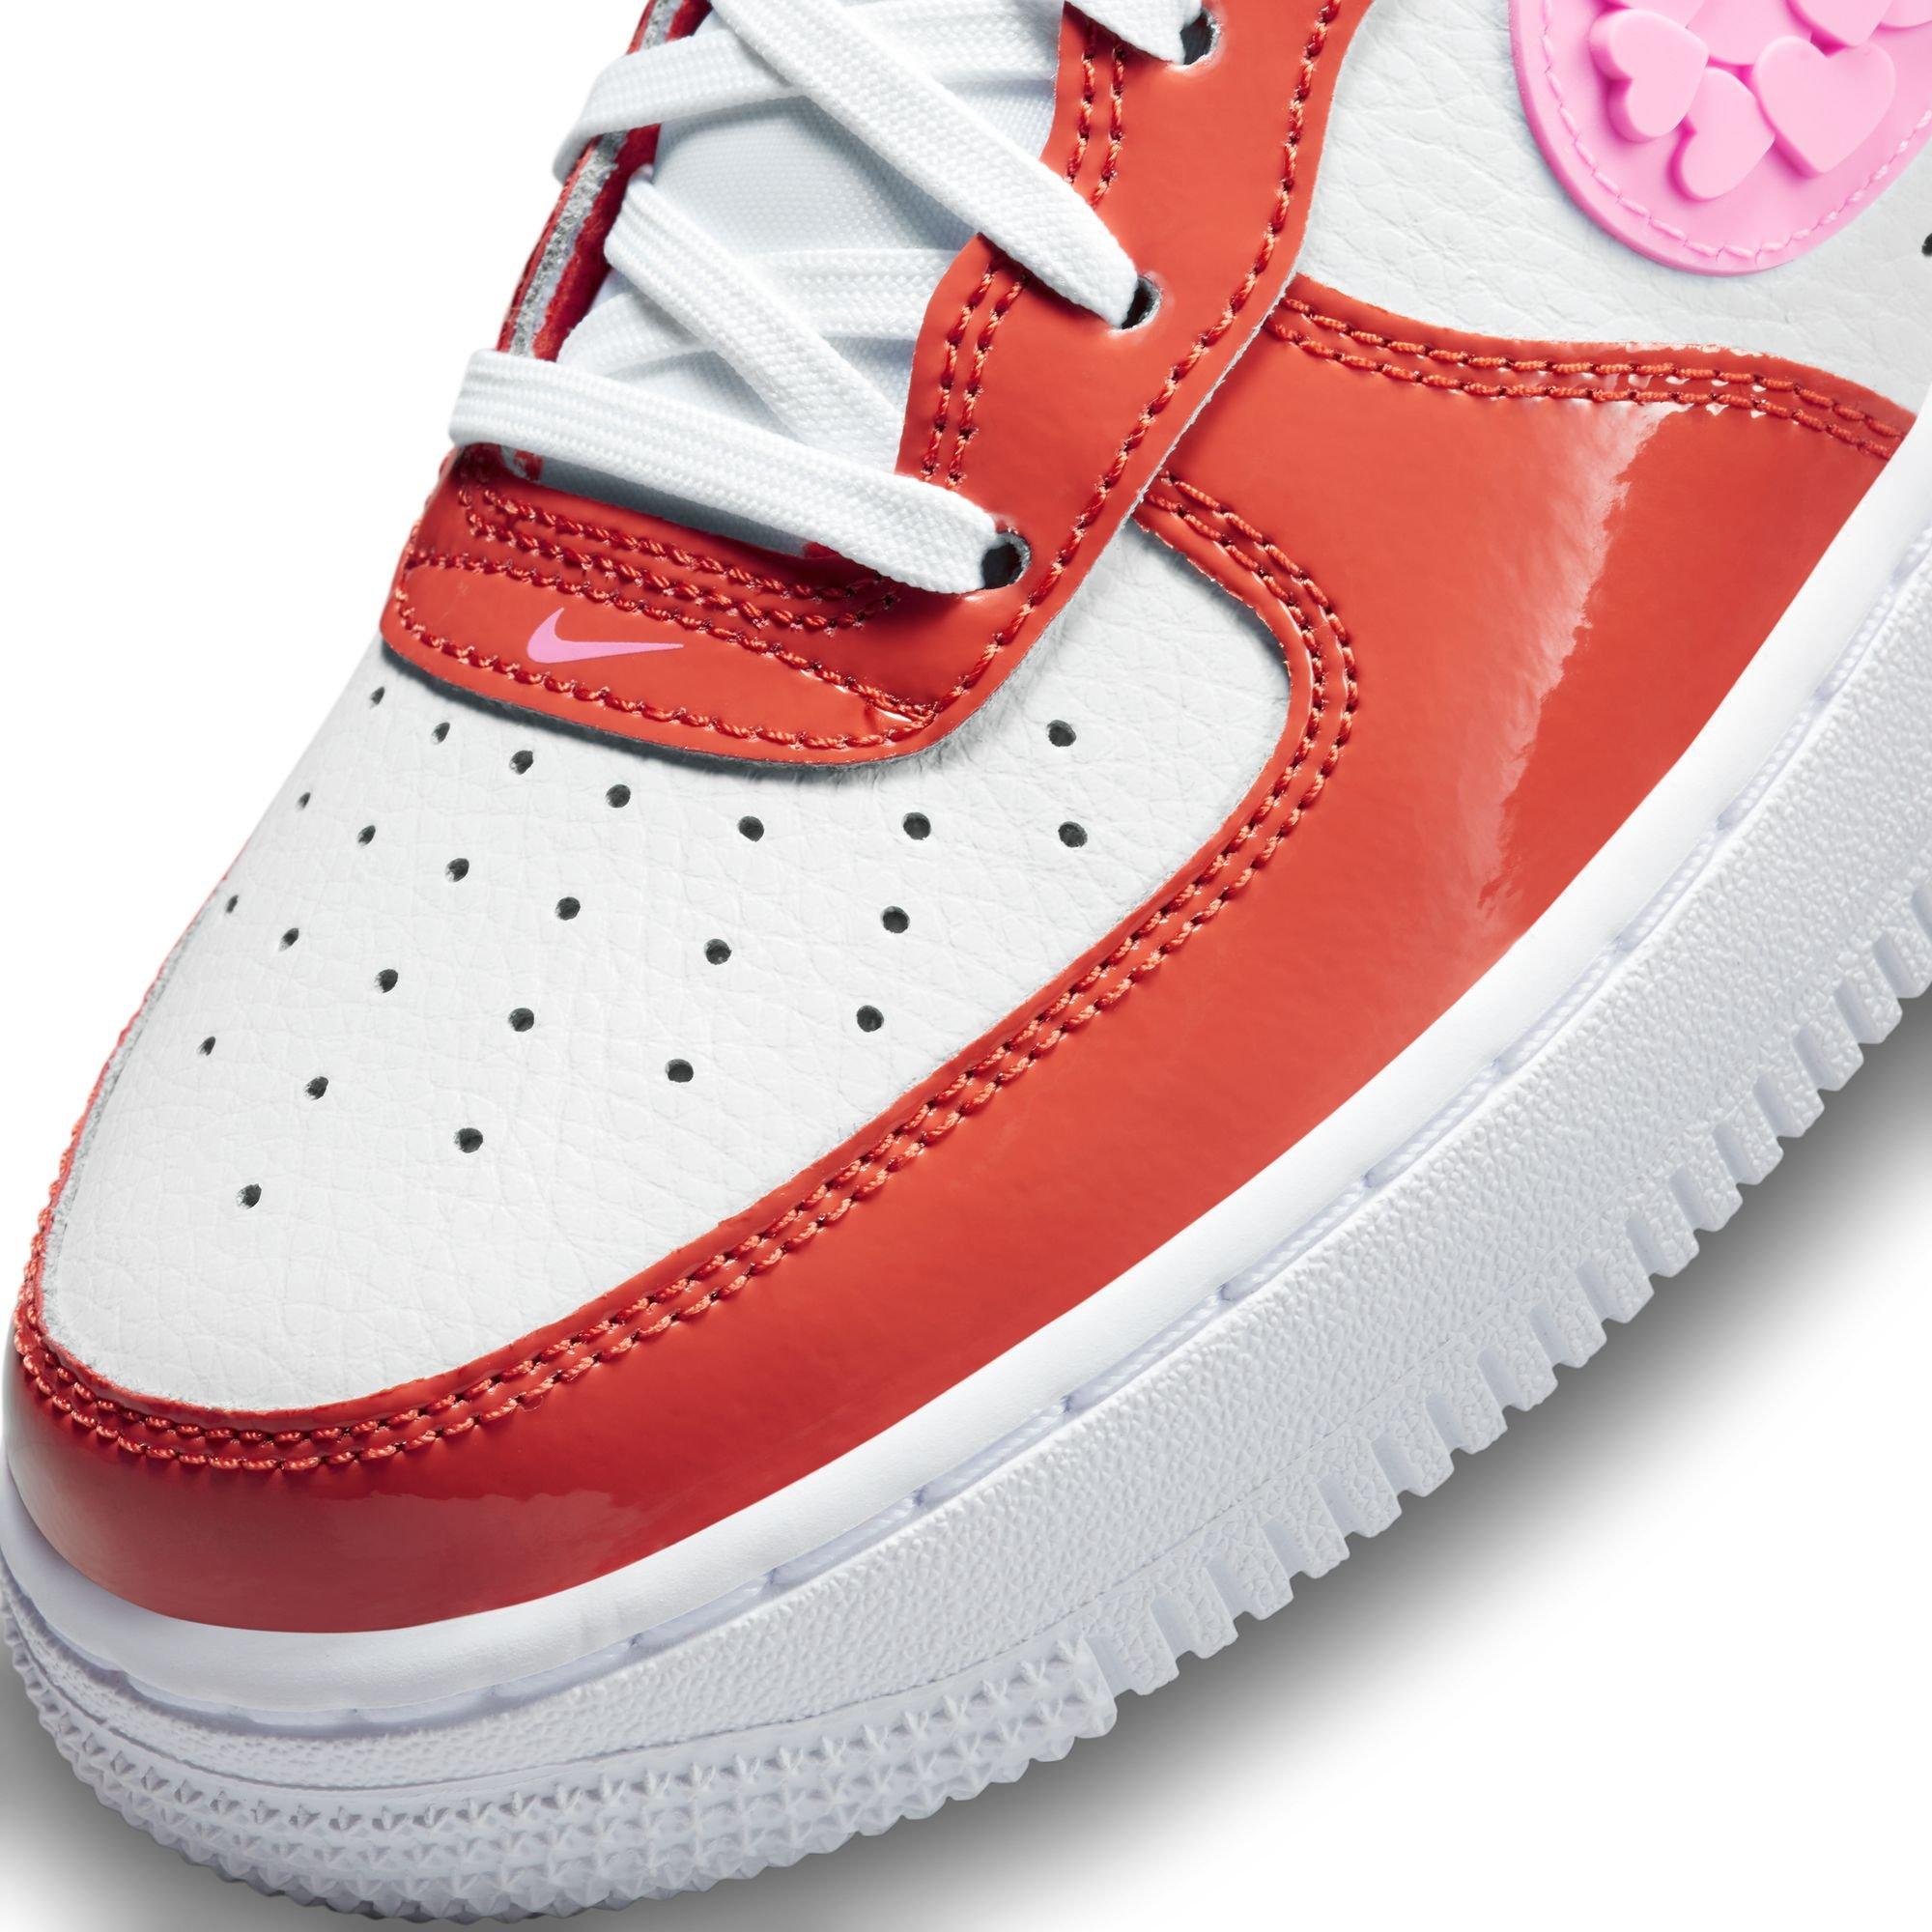 Nike Air Force 1 LV8 Next Nature Hot Curry Grade School Girls' Shoe -  Hibbett